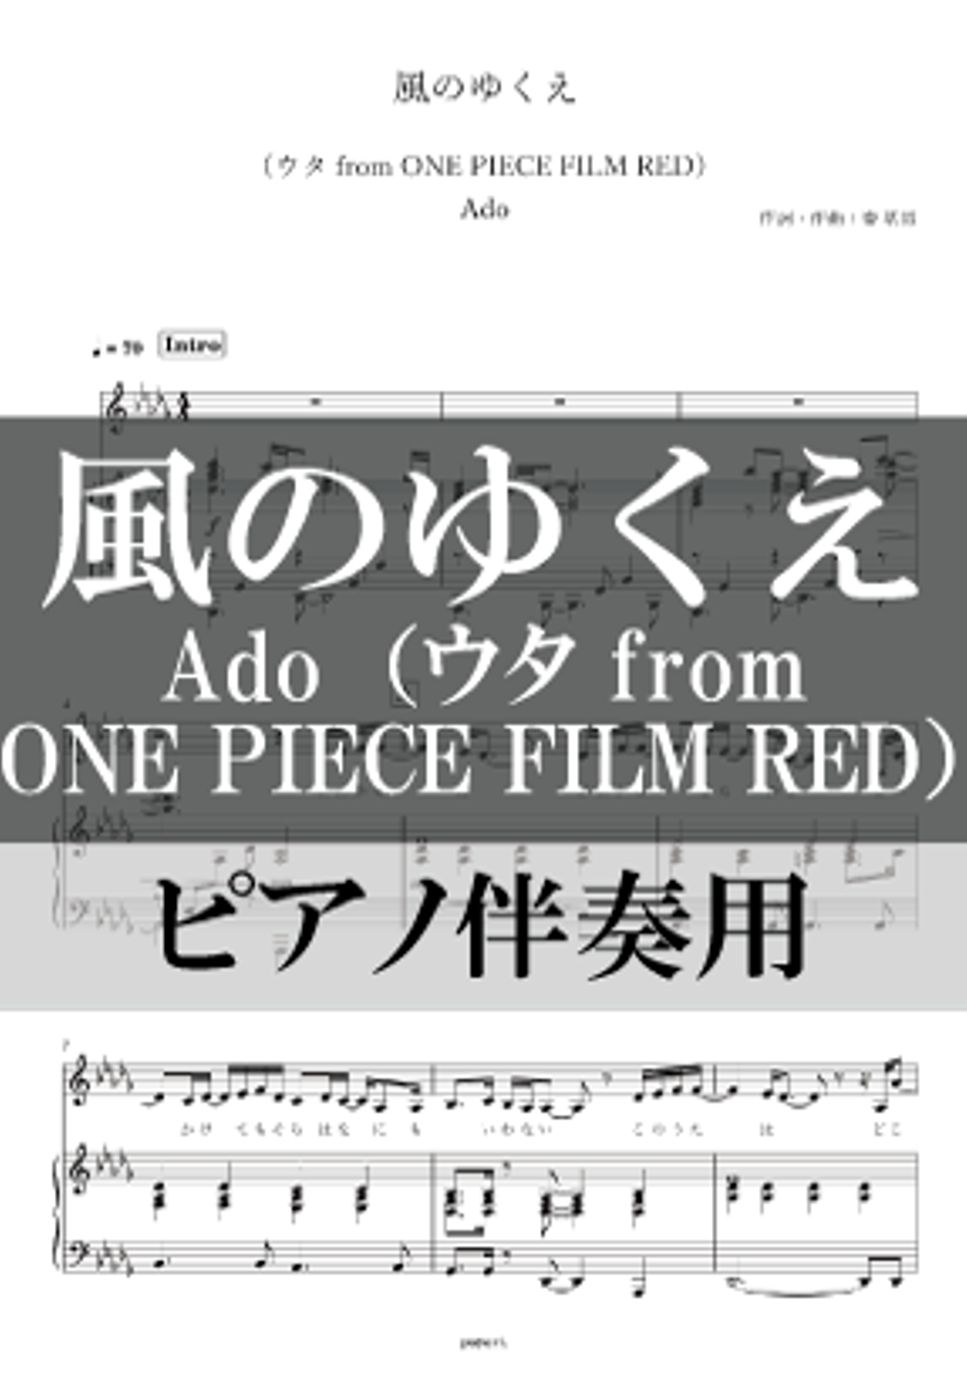 Ado - 風のゆくえ (ピアノ伴奏) by poyori.